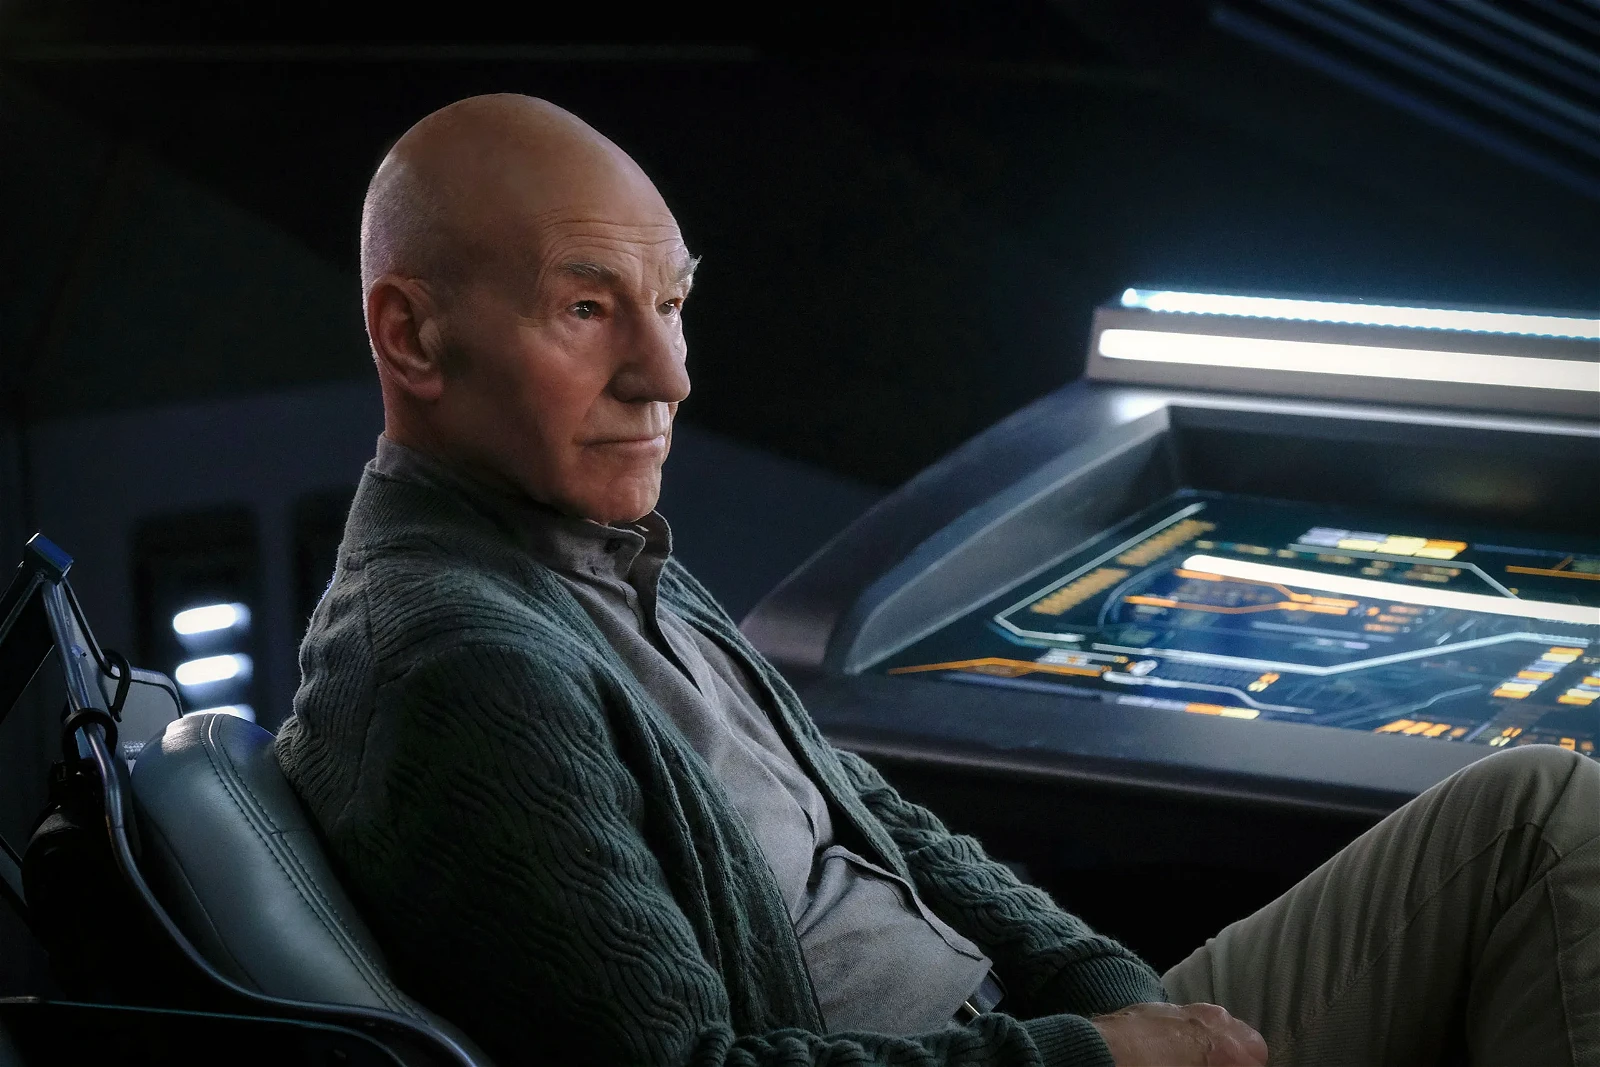 Sir Patrick Stewart returned as Captain Picard in Star Trek: Picard